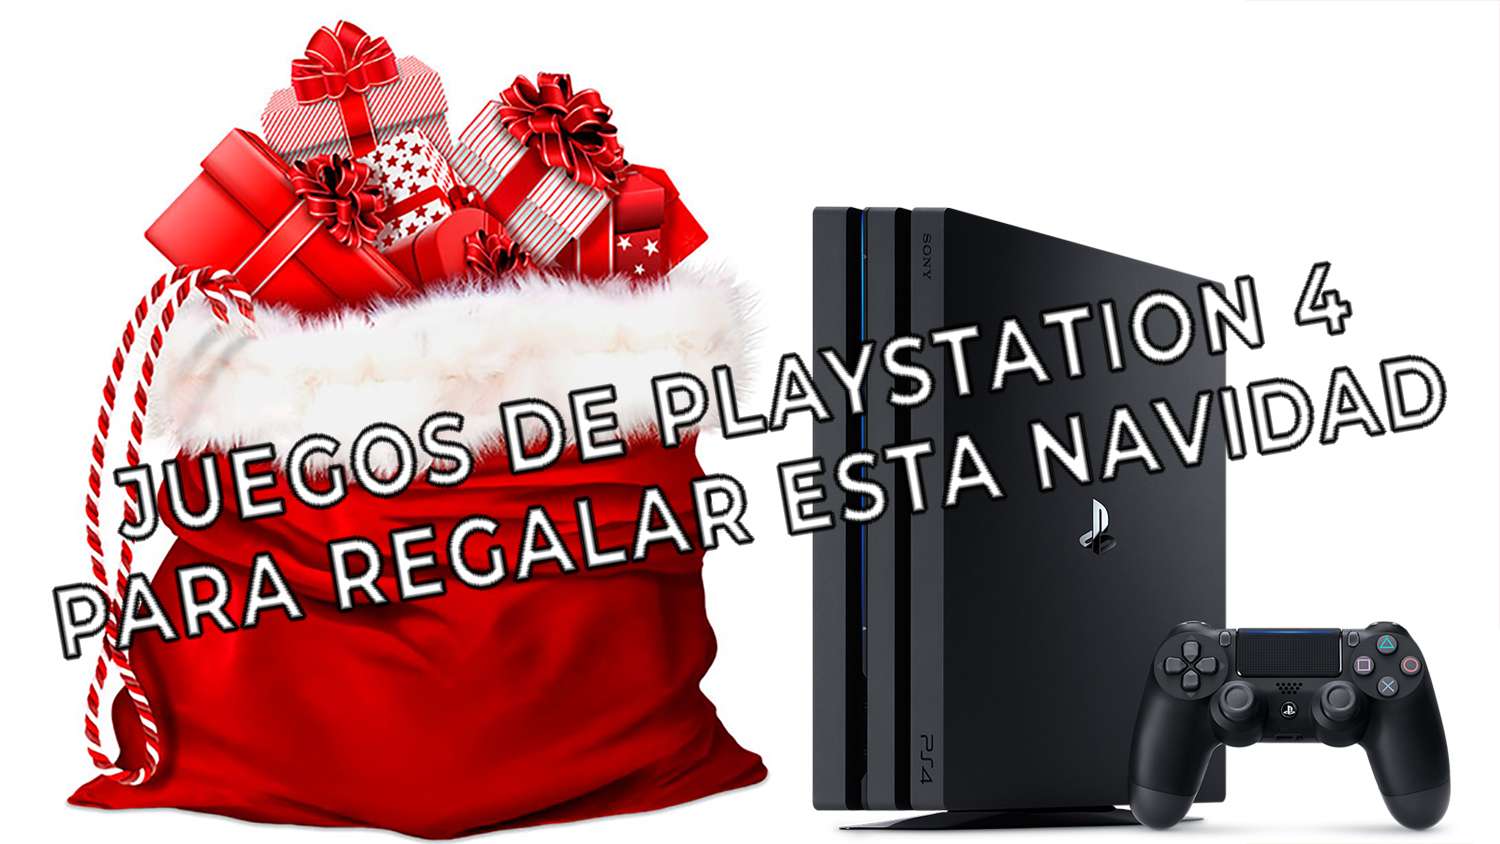 Los mejores juegos de PlayStation 4 para regalar esta navidad